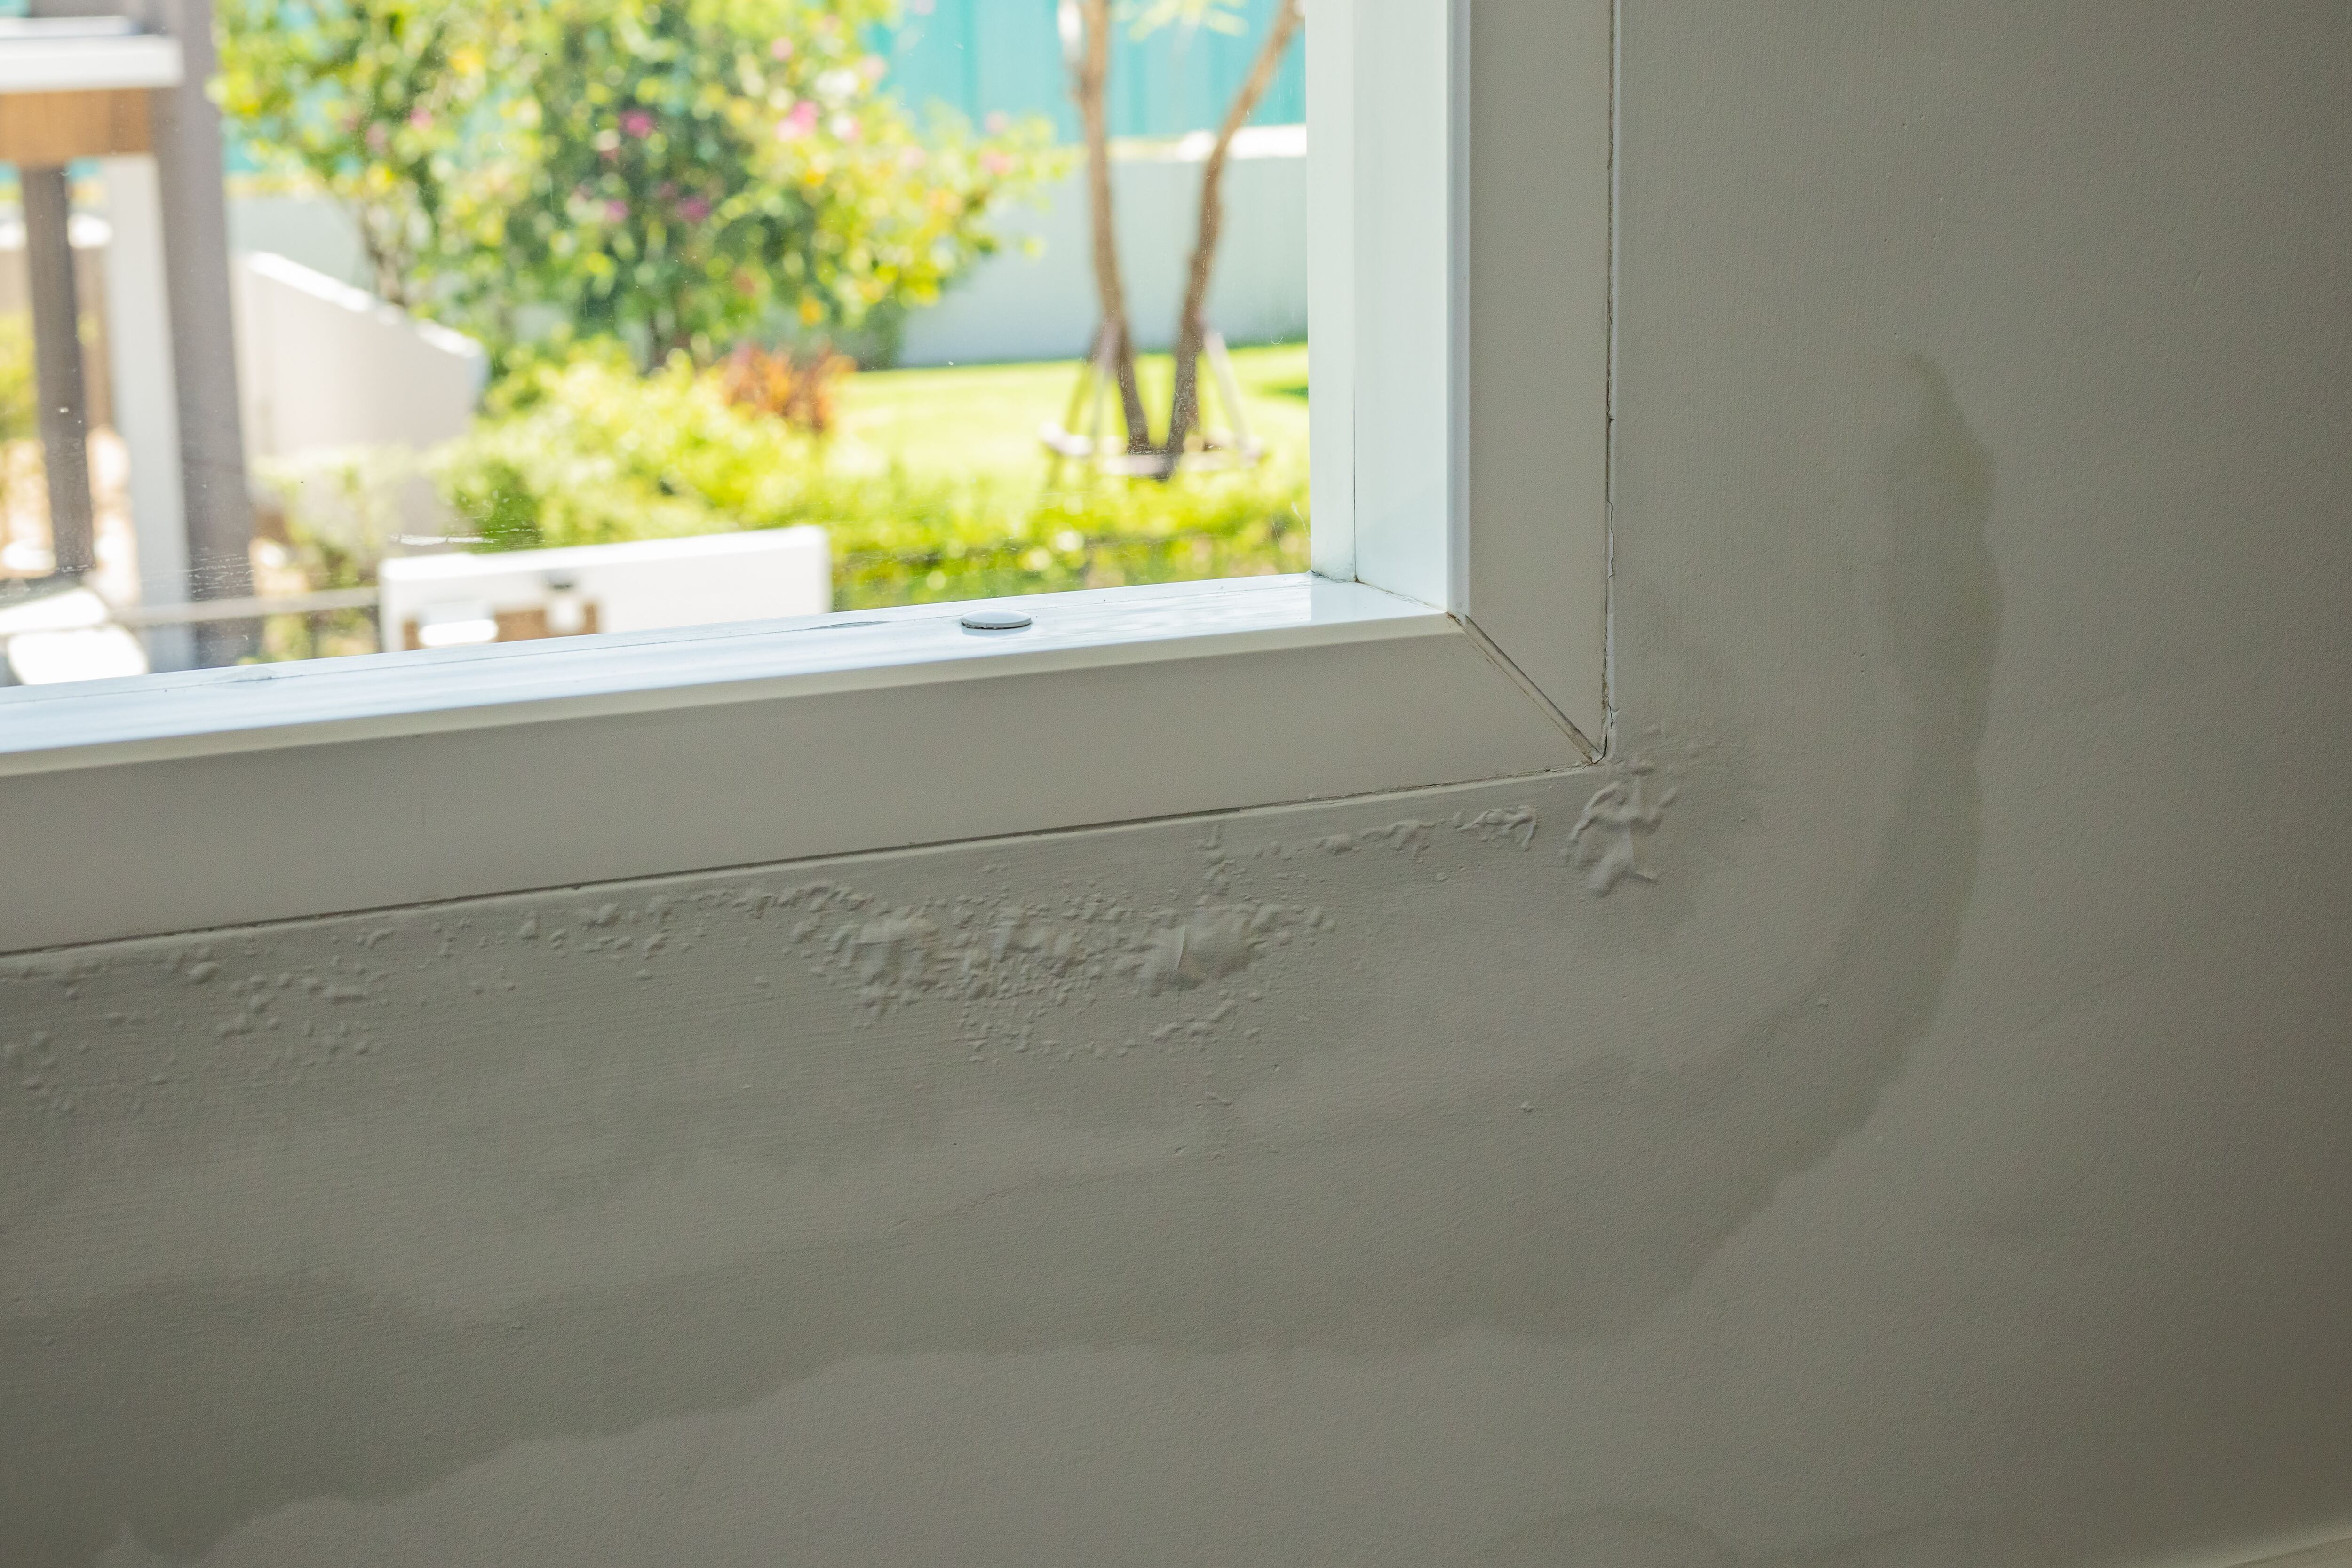 Cómo quitar el moho de las paredes sin dañar la pintura?: los mejores  trucos caseros, Respuestas